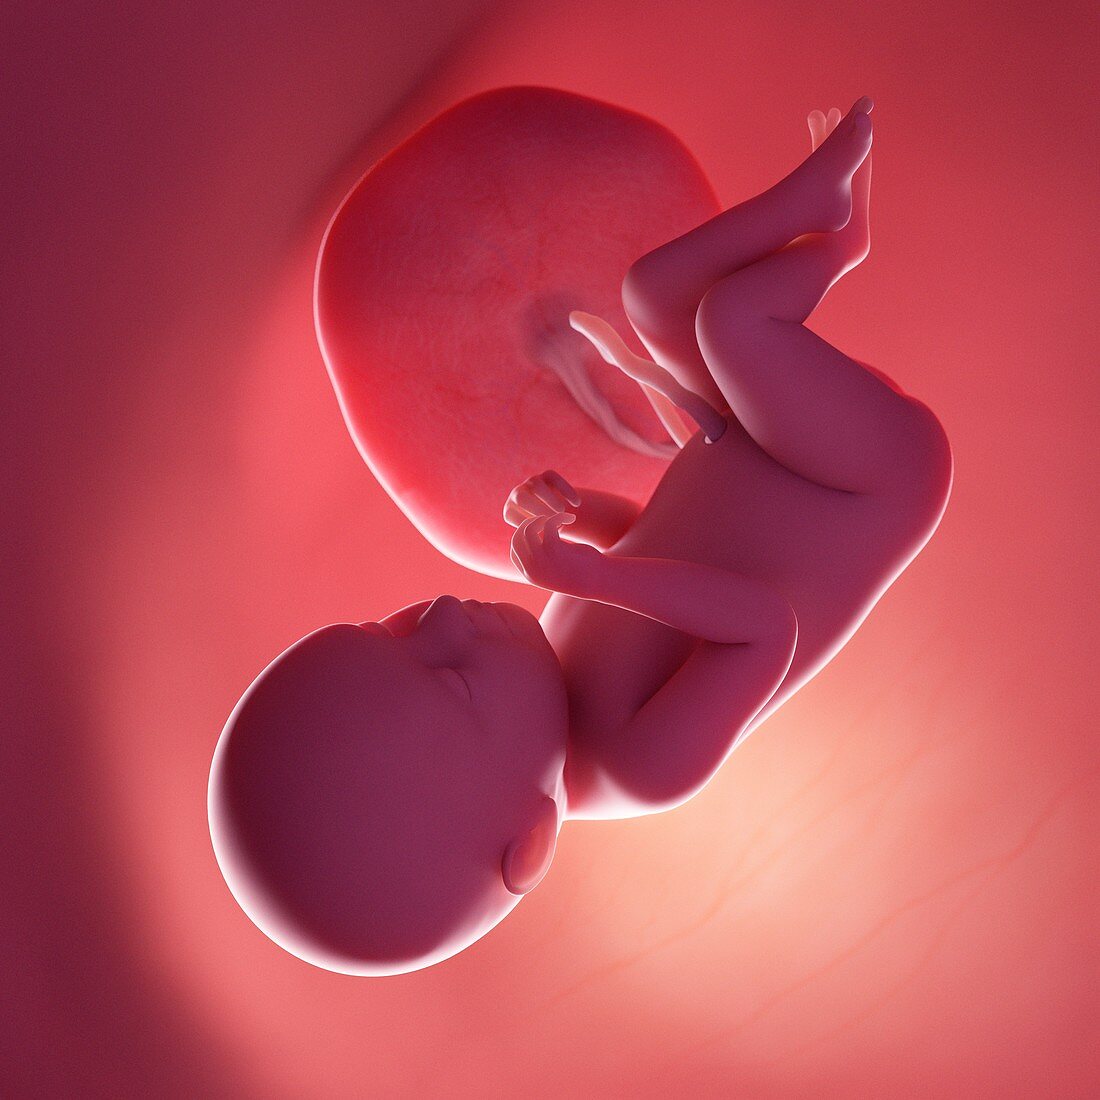 Fetus at week 39, illustration